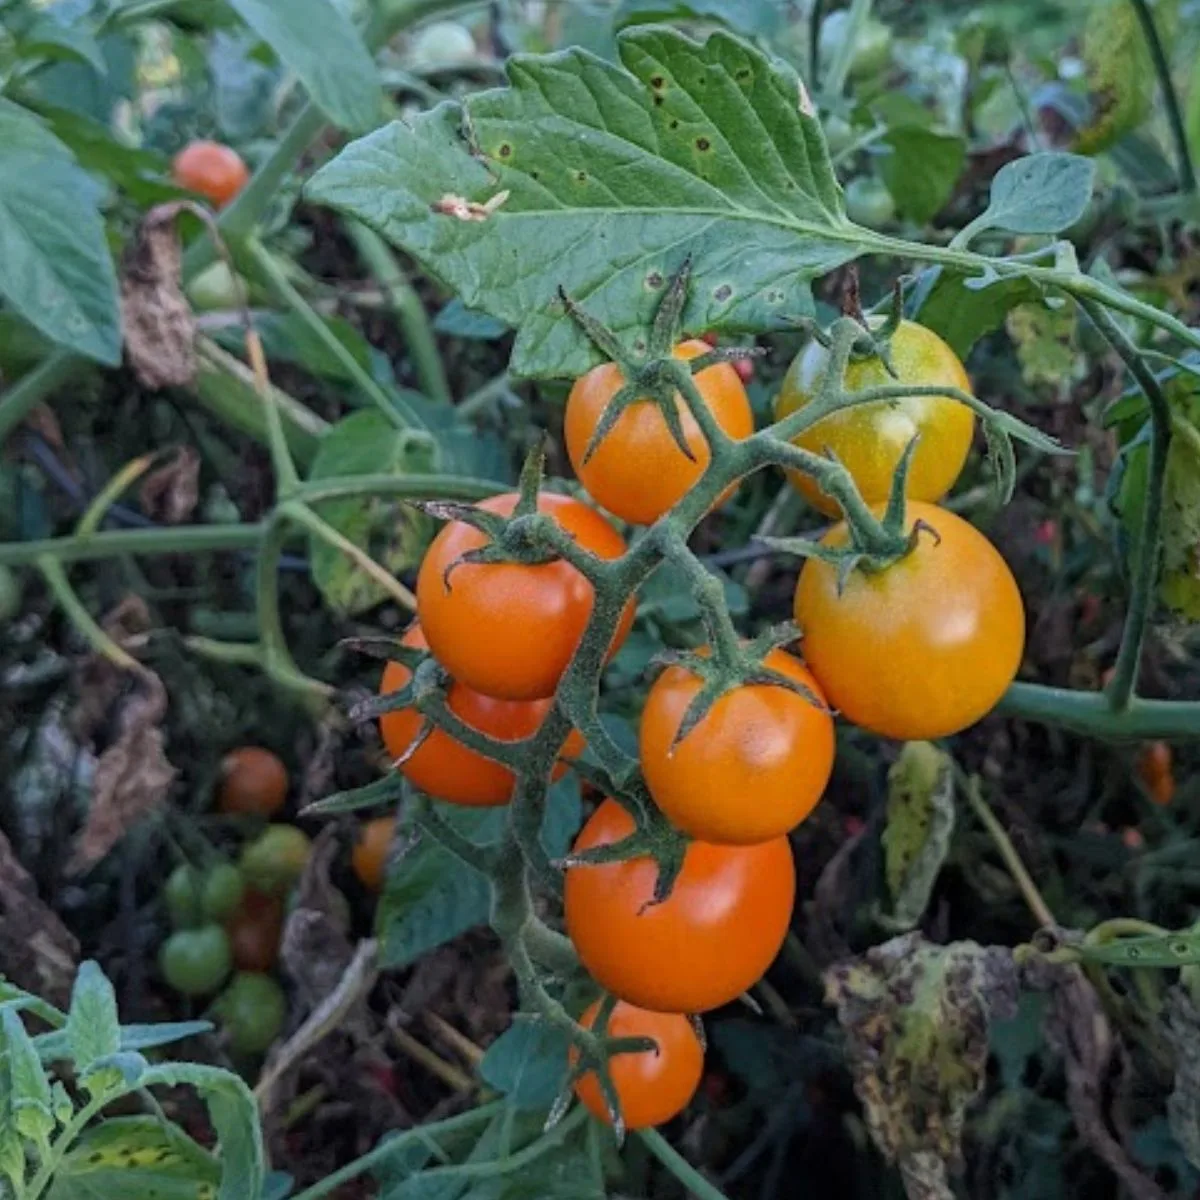 Orange cherry tomatoes on the vine.